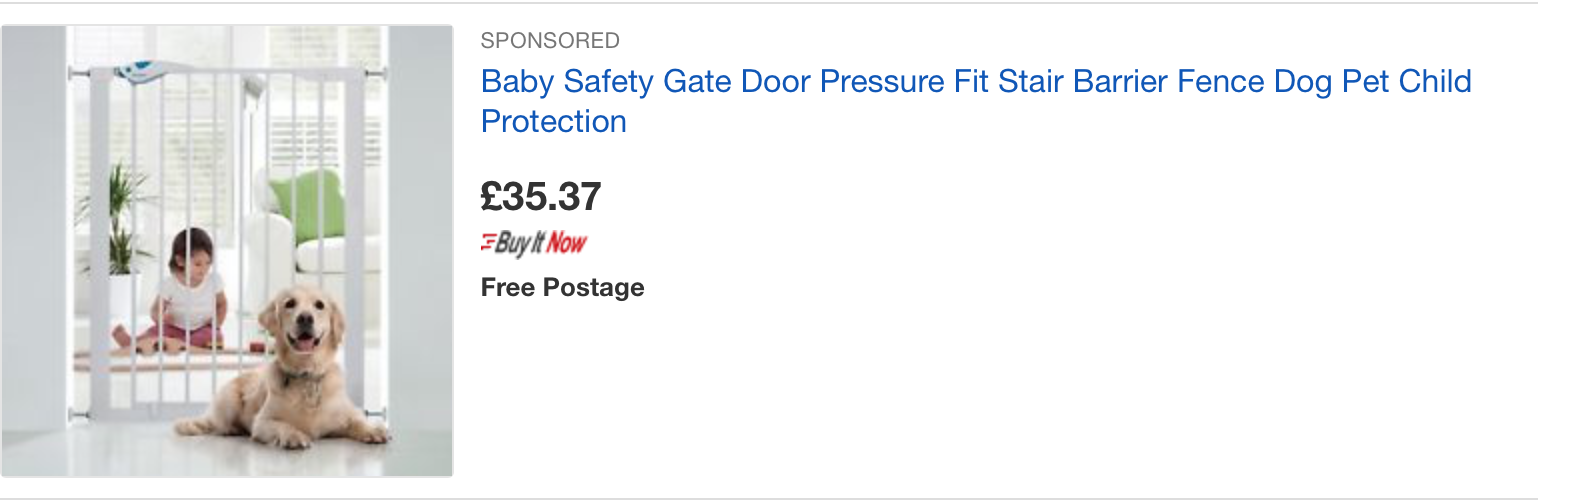 eBay dog gate